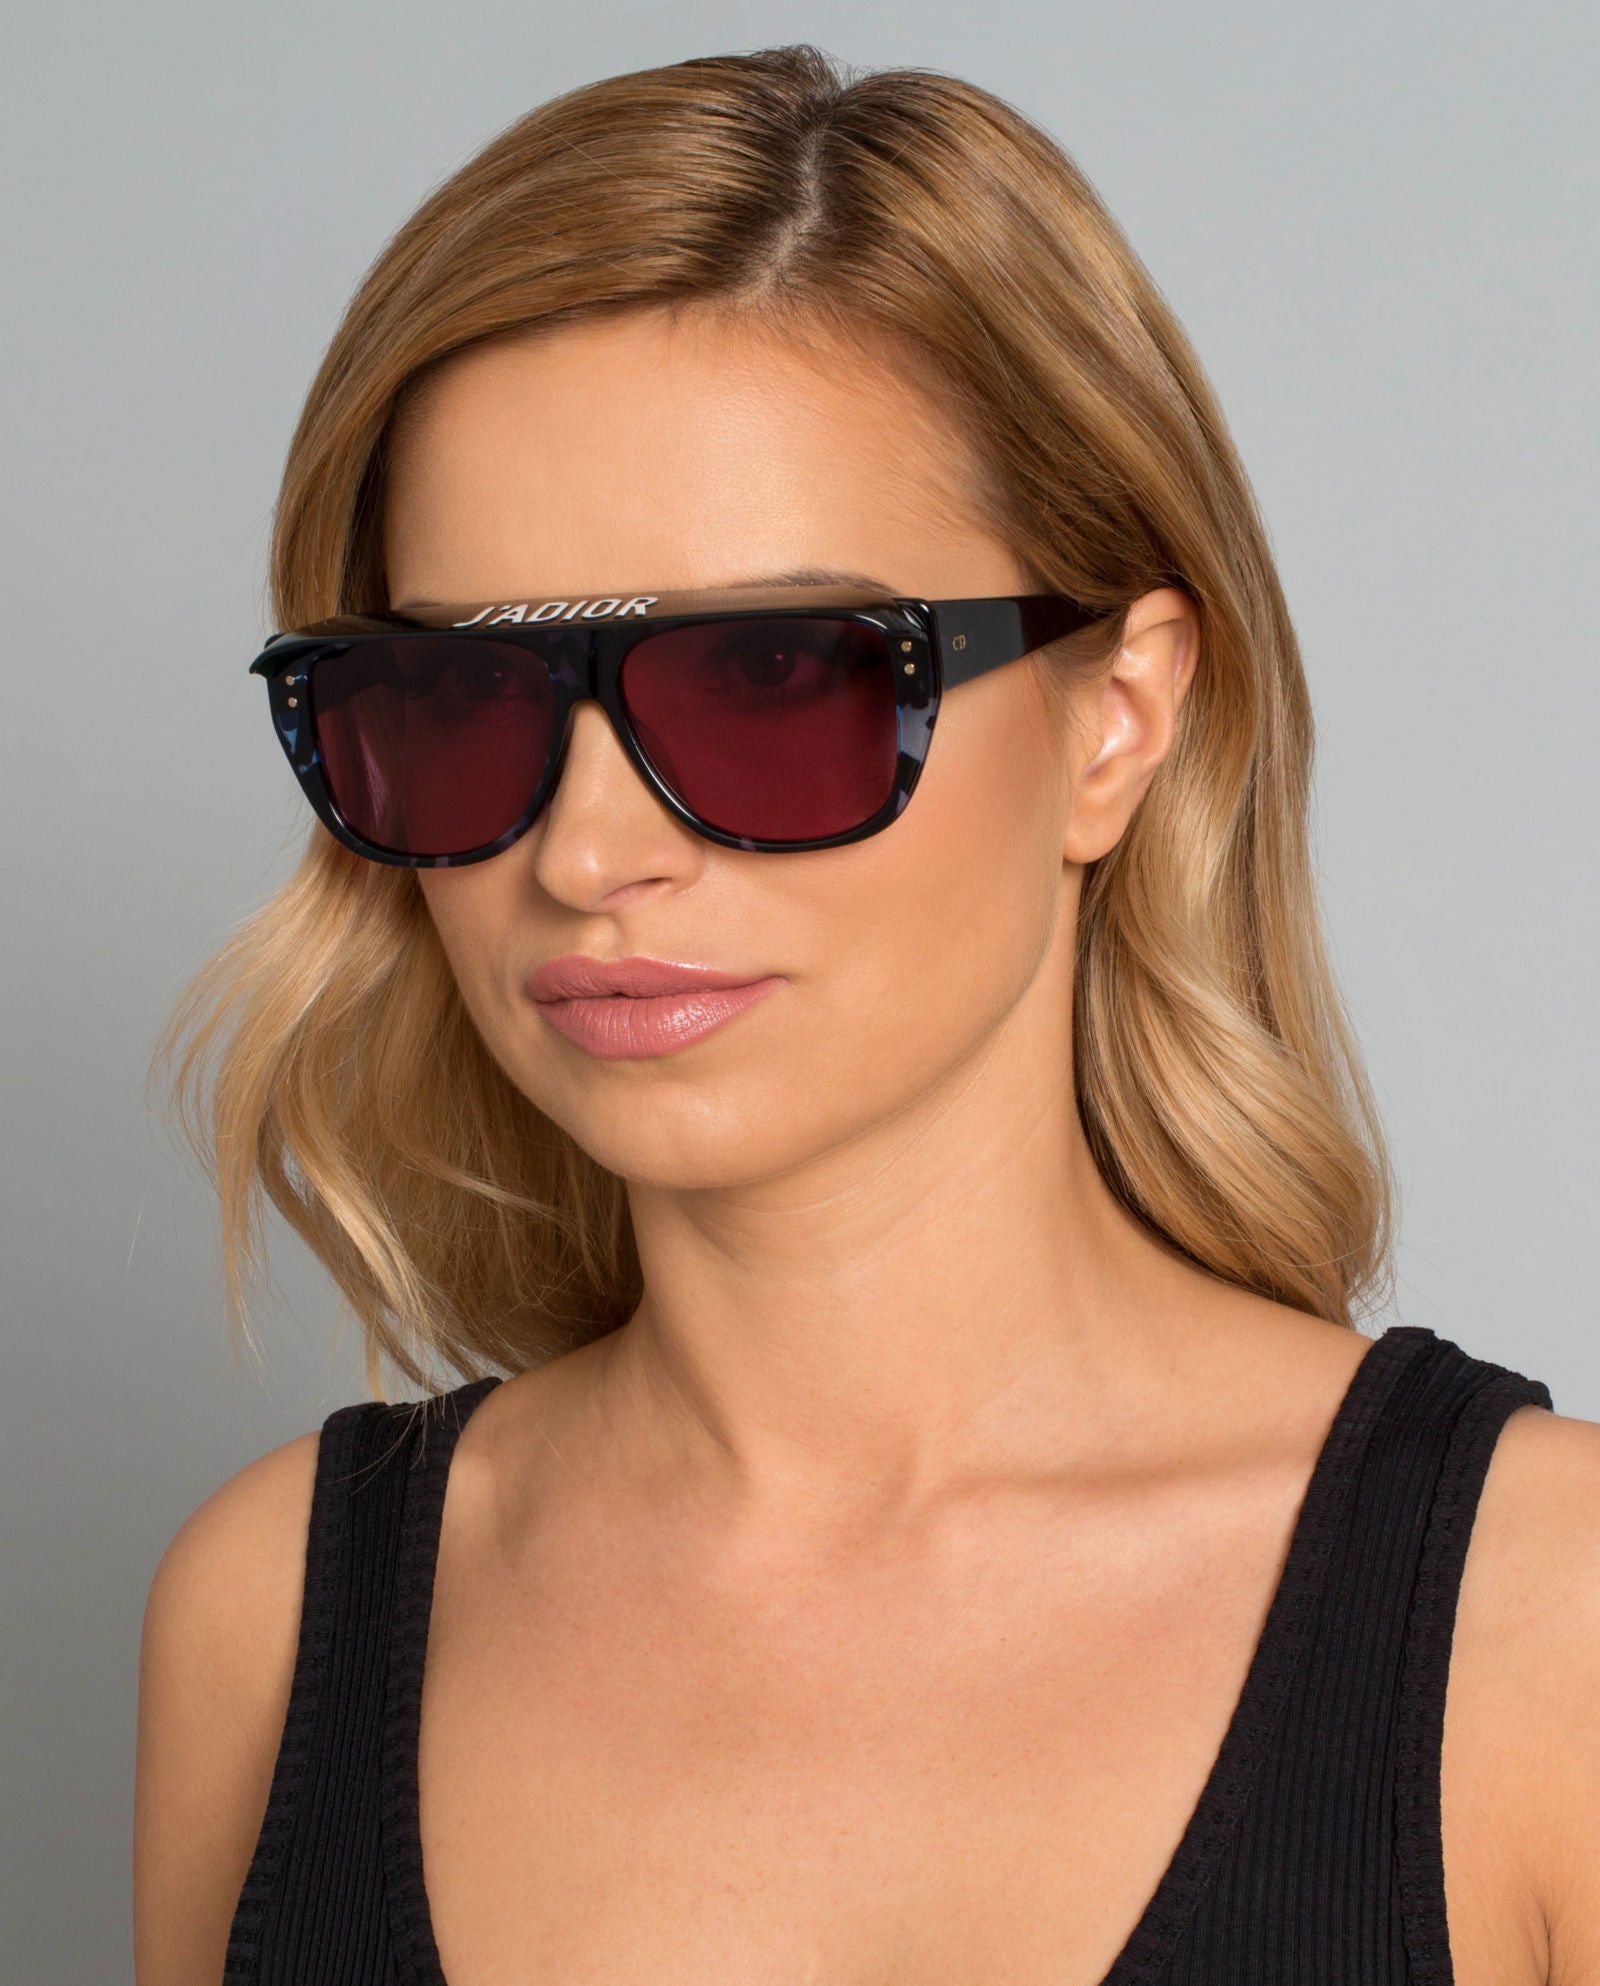 diorclub2 sunglasses price